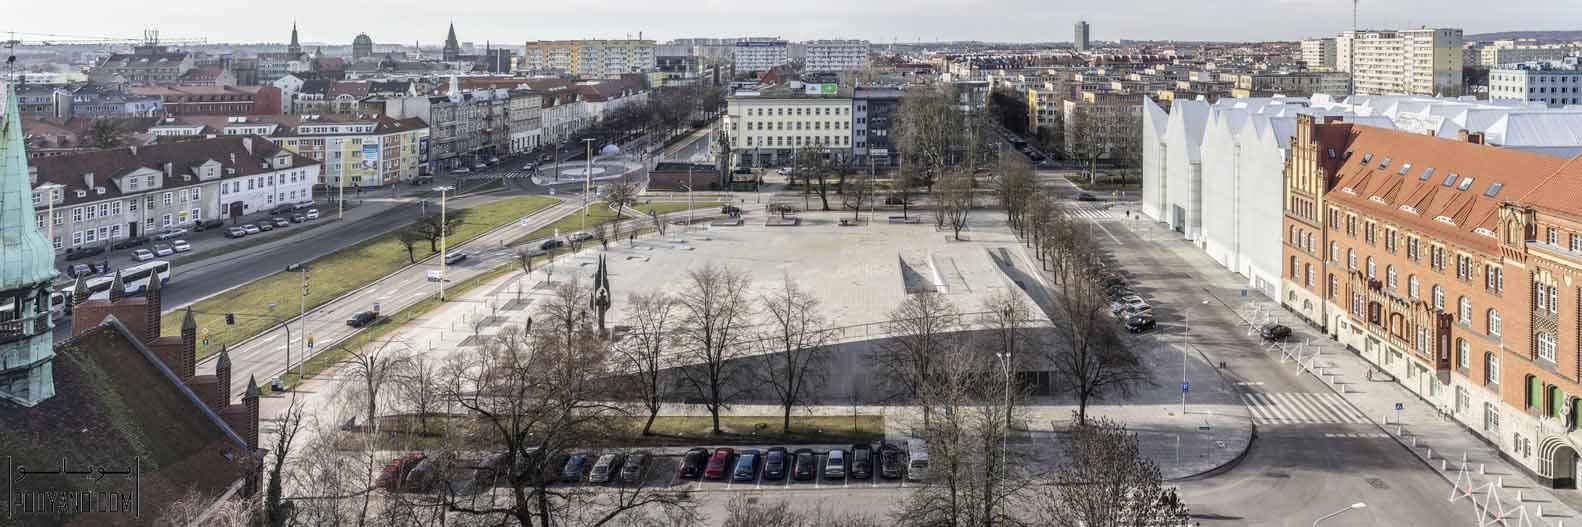 برندگان جایزه اروپایی، معماری فضاهای عمومی شهری 2016